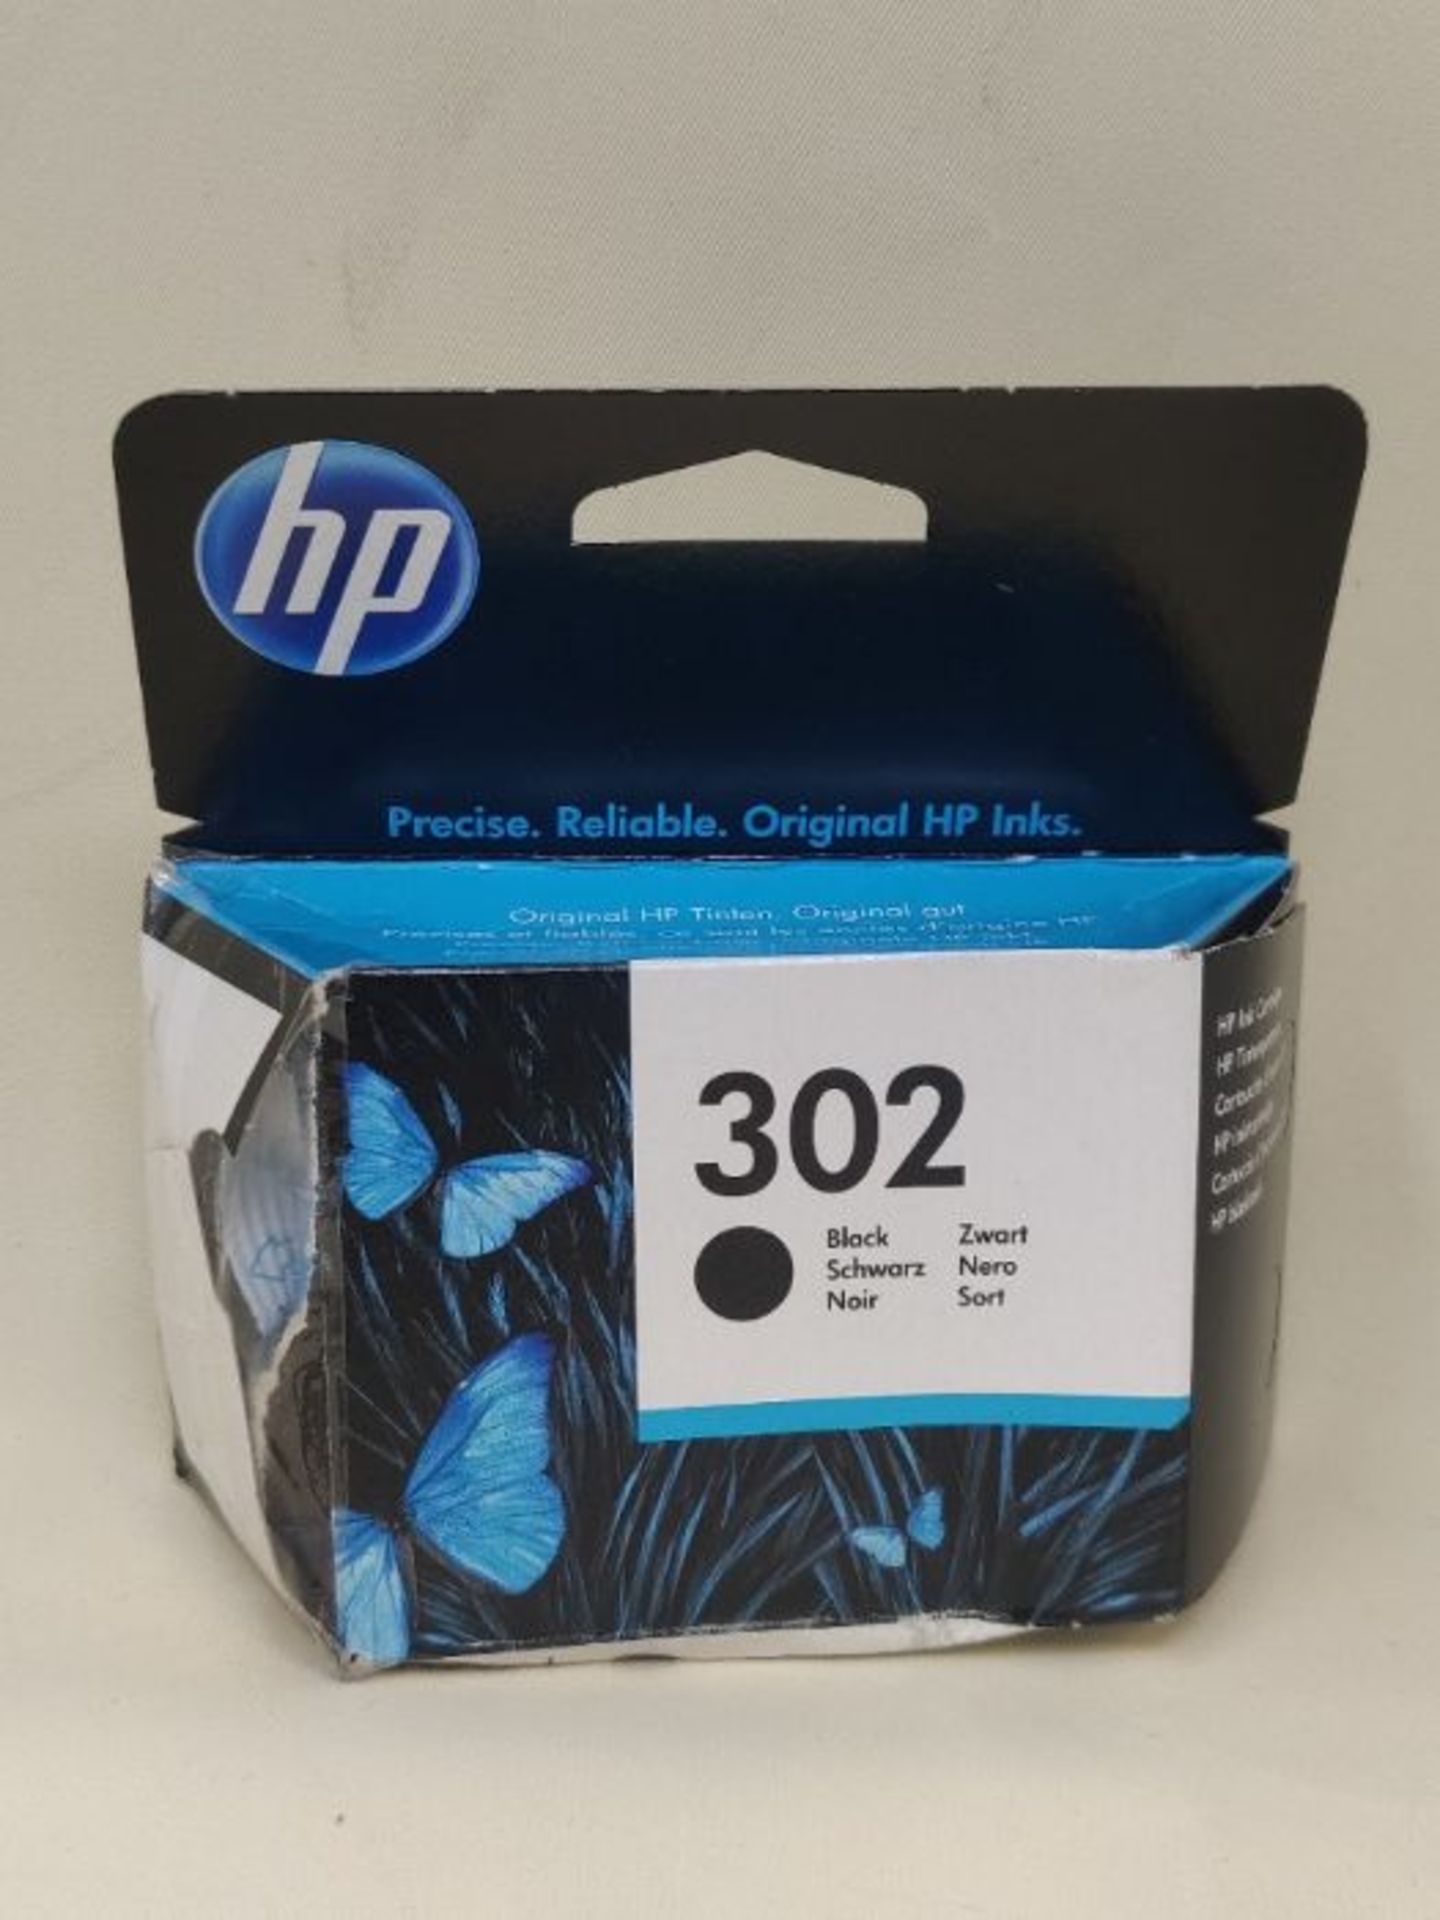 HP F6U66AE 302 Original Ink Cartridge, Black, Single Pack - Image 2 of 3